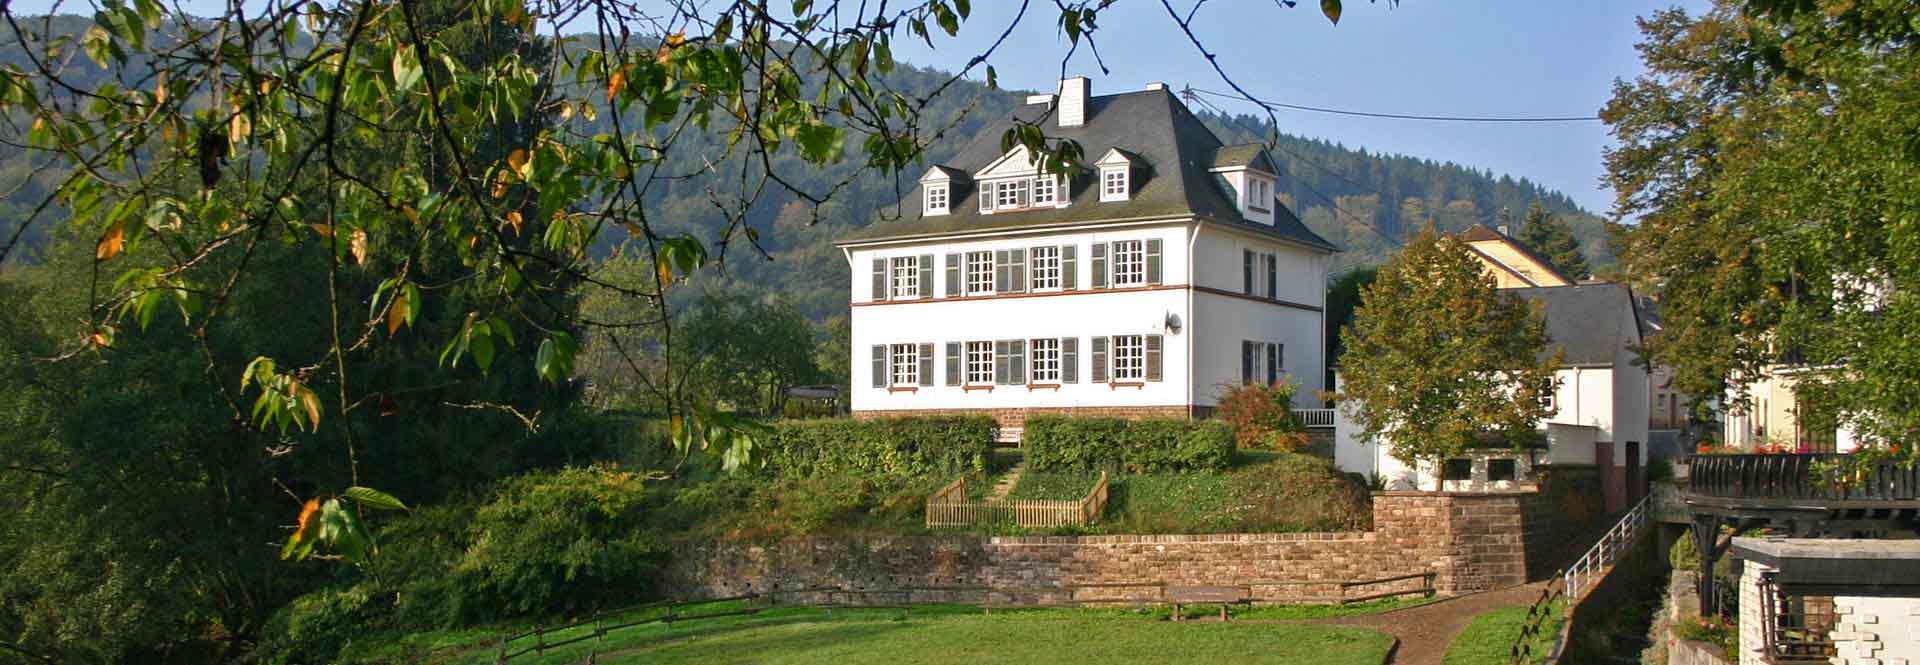 Das Alte Pfarrhaus Malberg